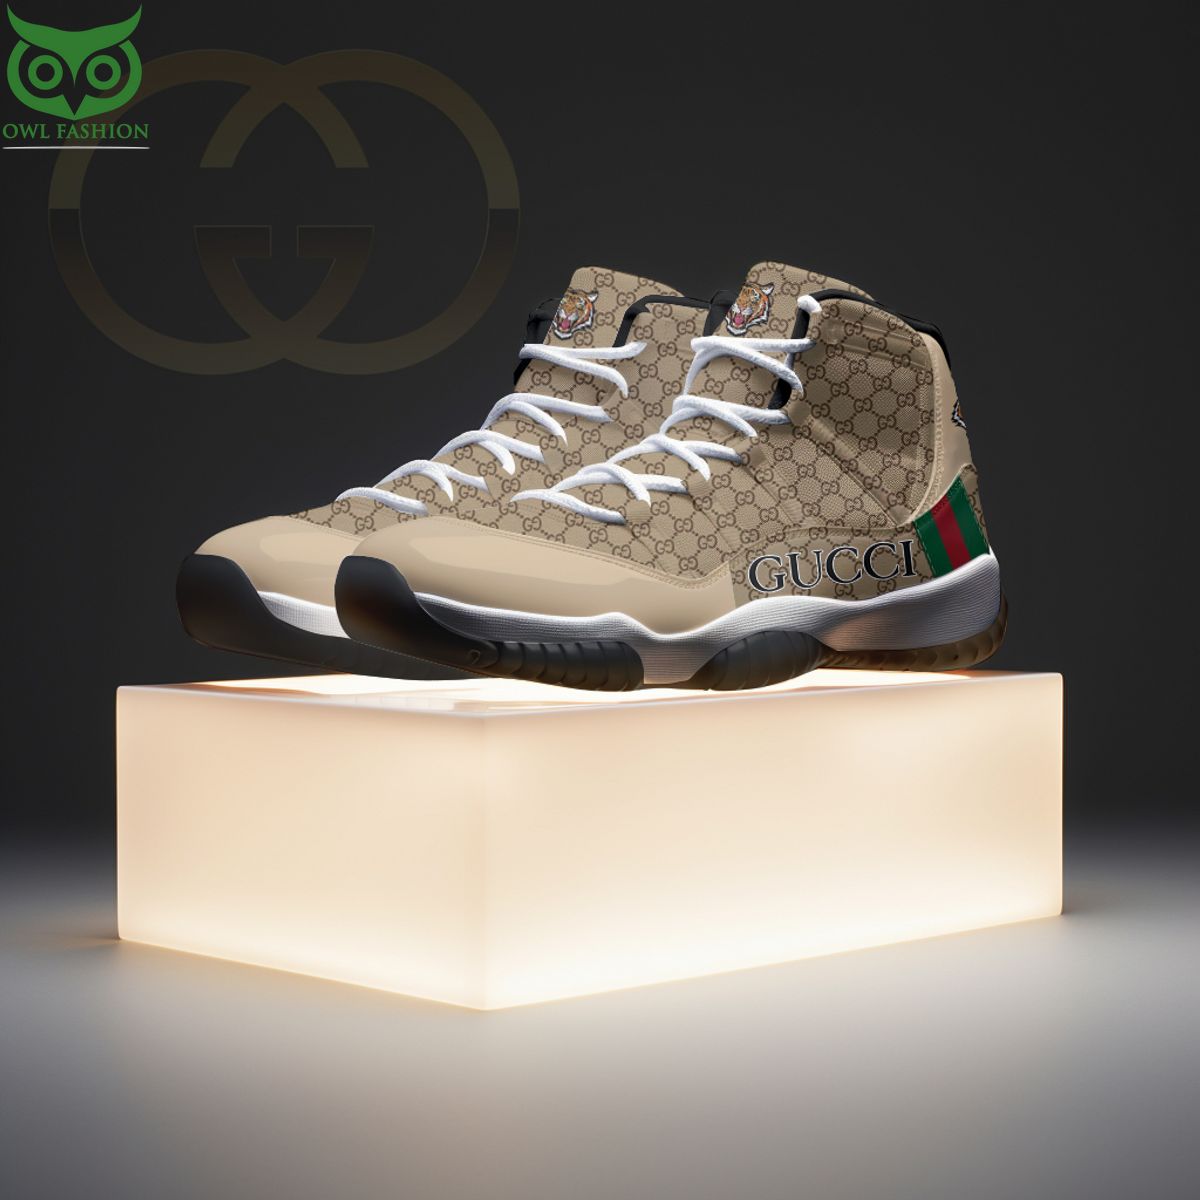 Gucci Famous Fashion Brand Air Jordan 11